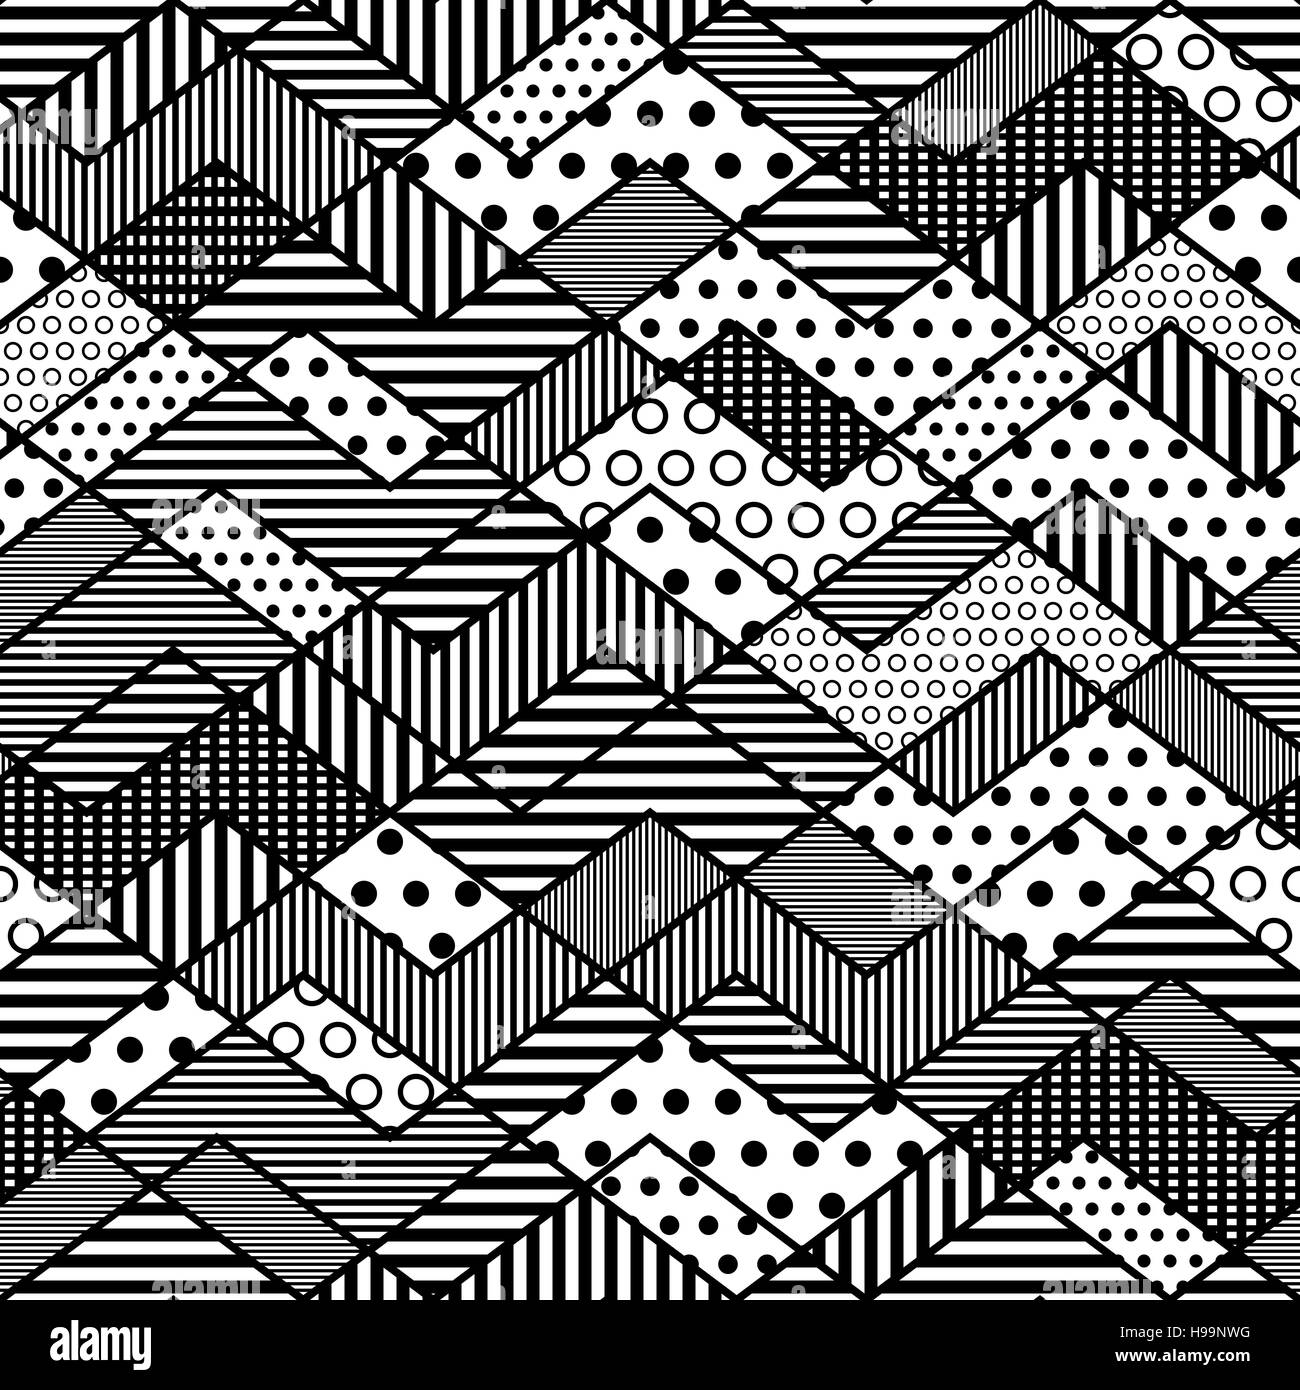 Motif patchwork géométrique monochrome - vector illustration eps 8. Illustration de Vecteur